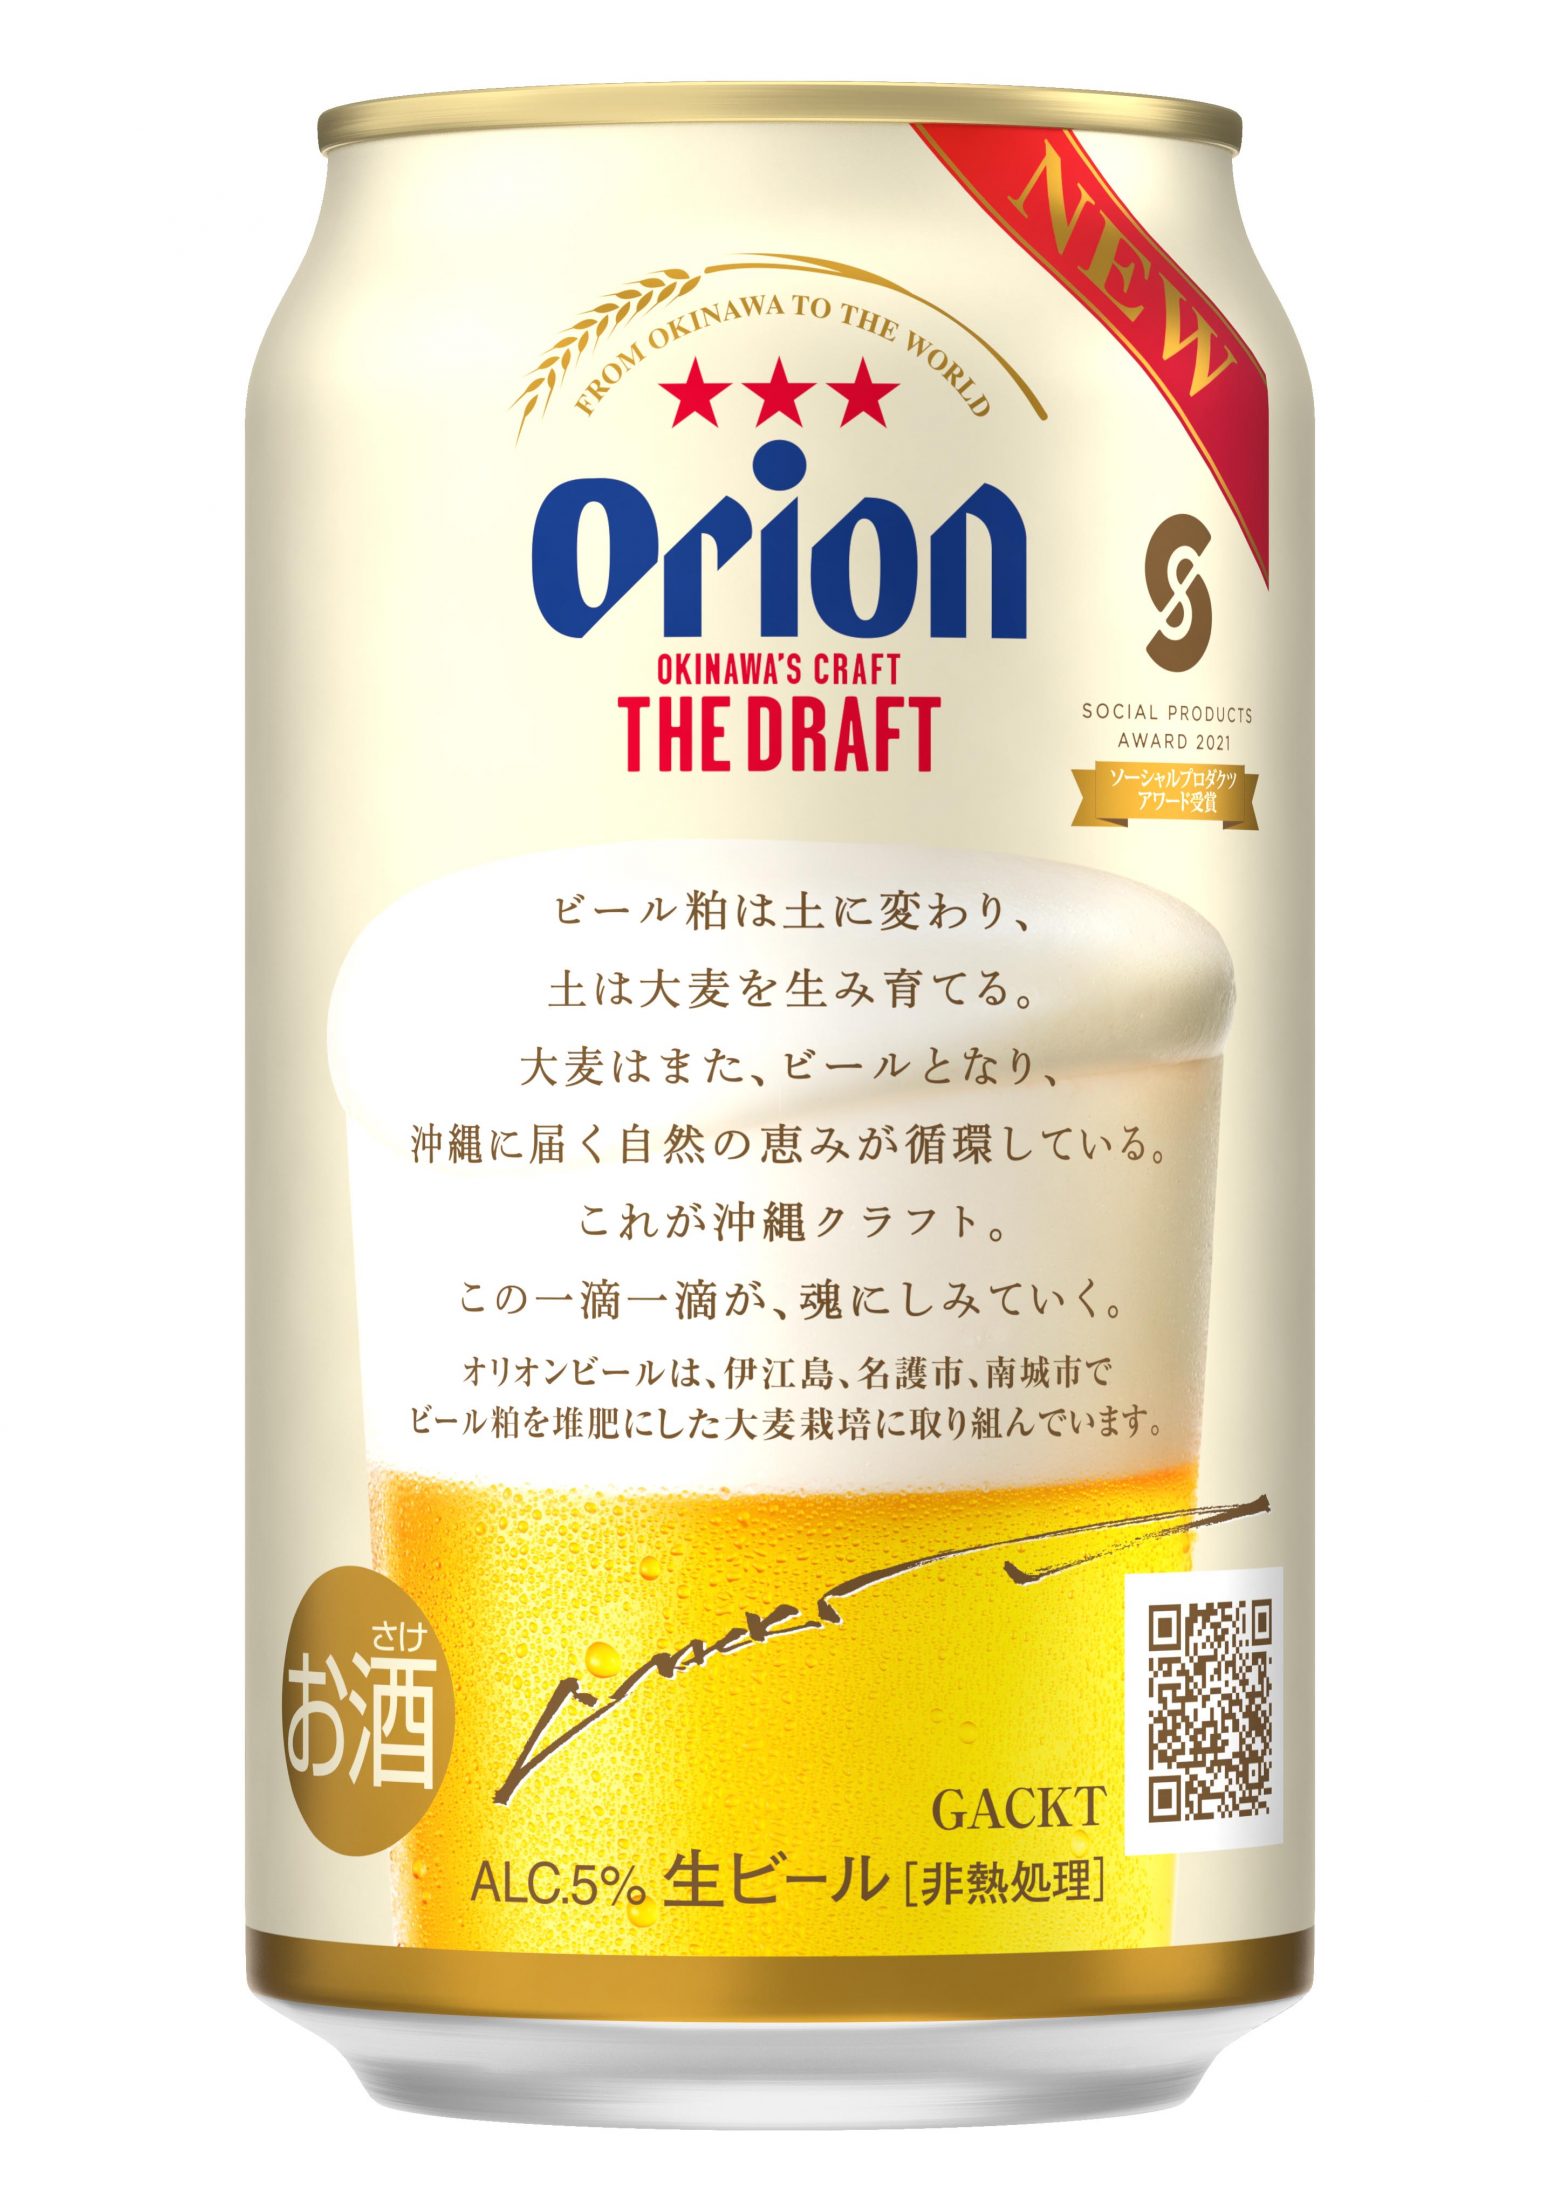 Gackt オリオンビール ザ ドラフト期間限定缶にメッセージ 魂にしみていく Musicman